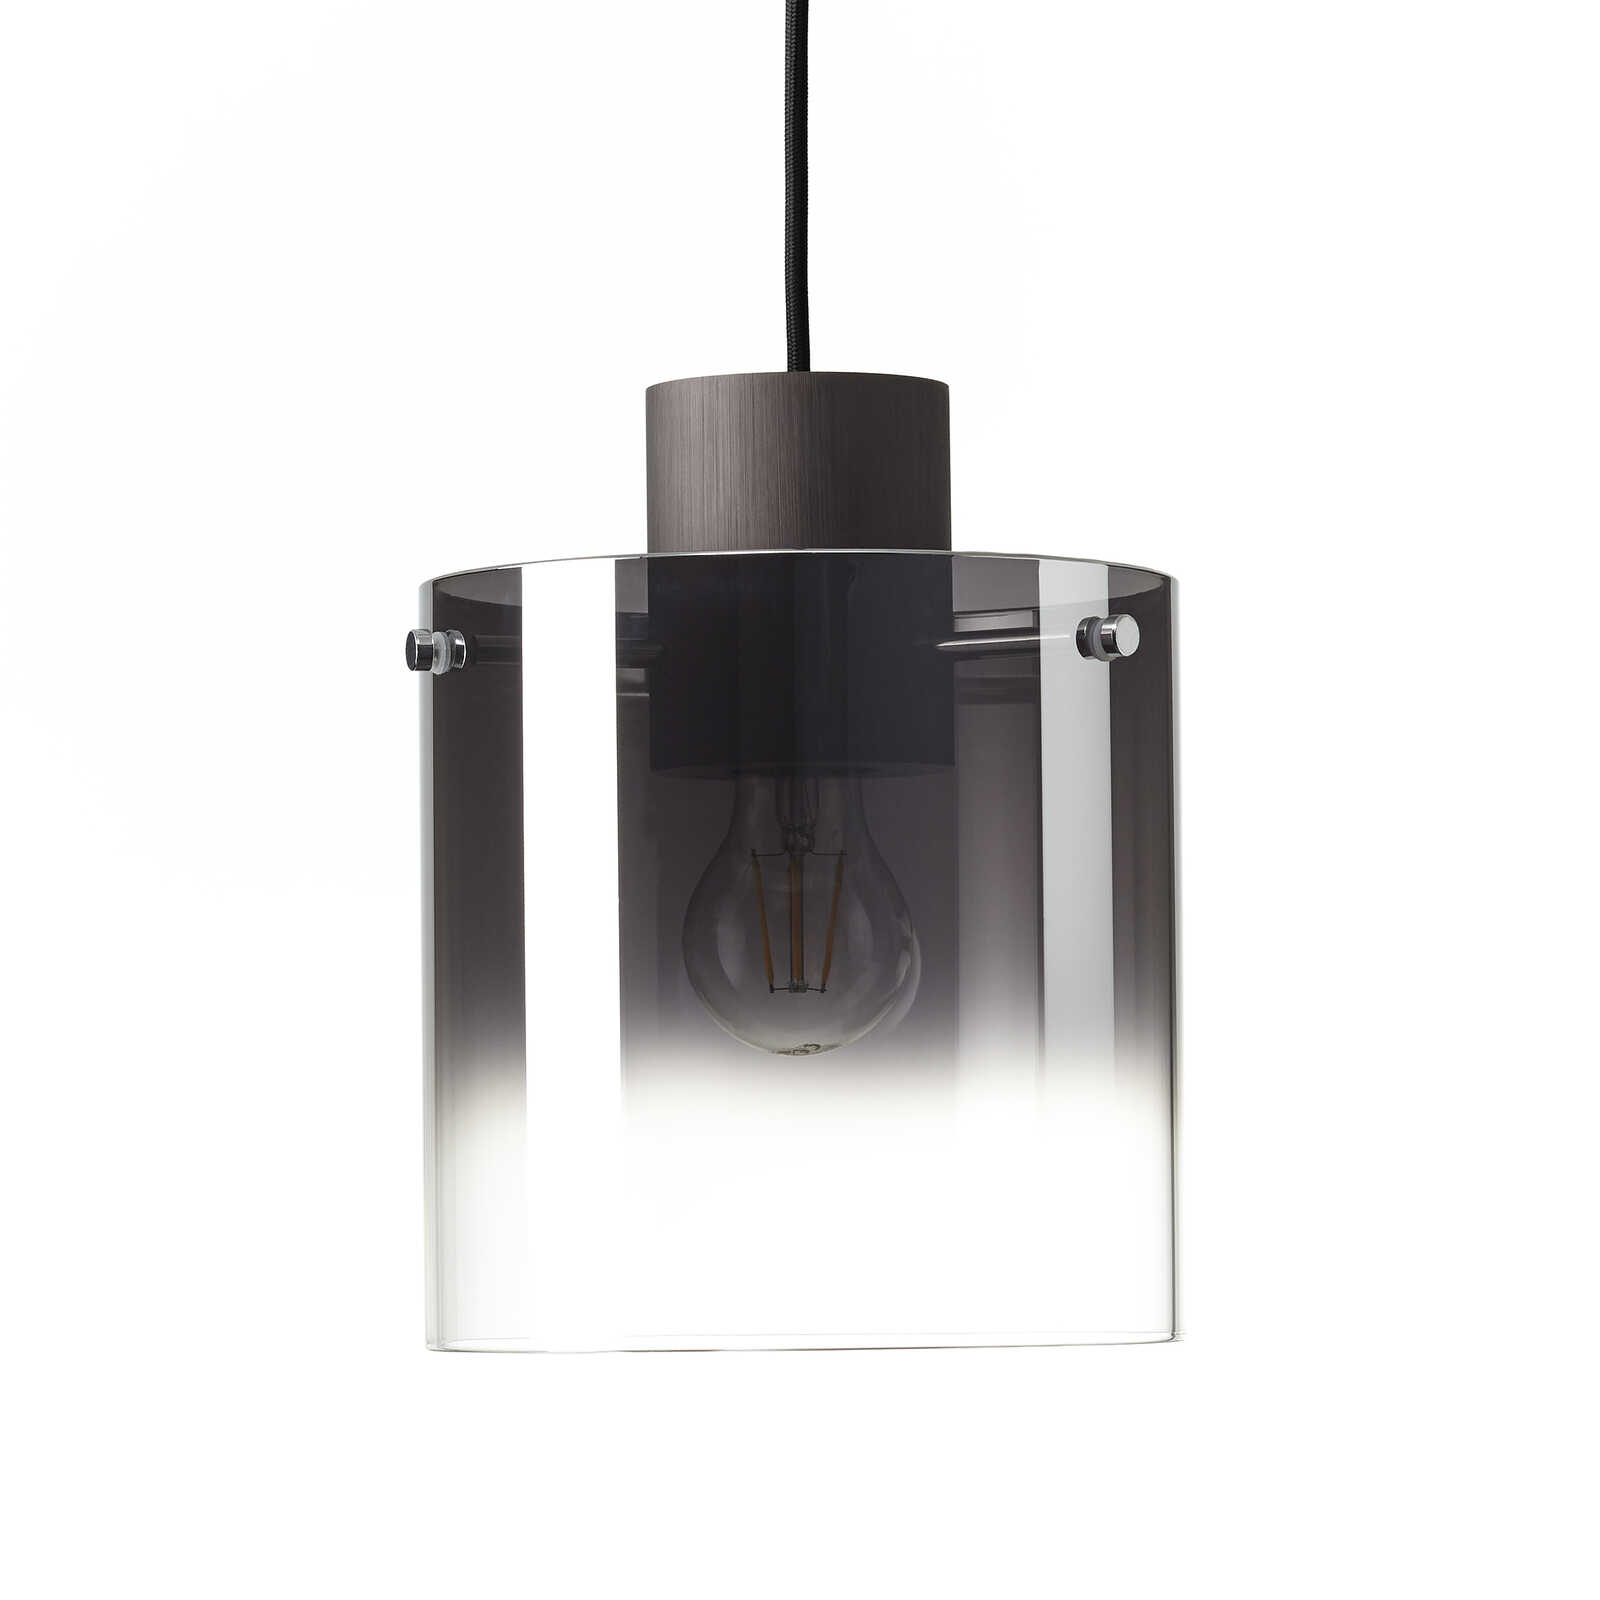             Glazen hanglamp - Benett 3 - Bruin
        